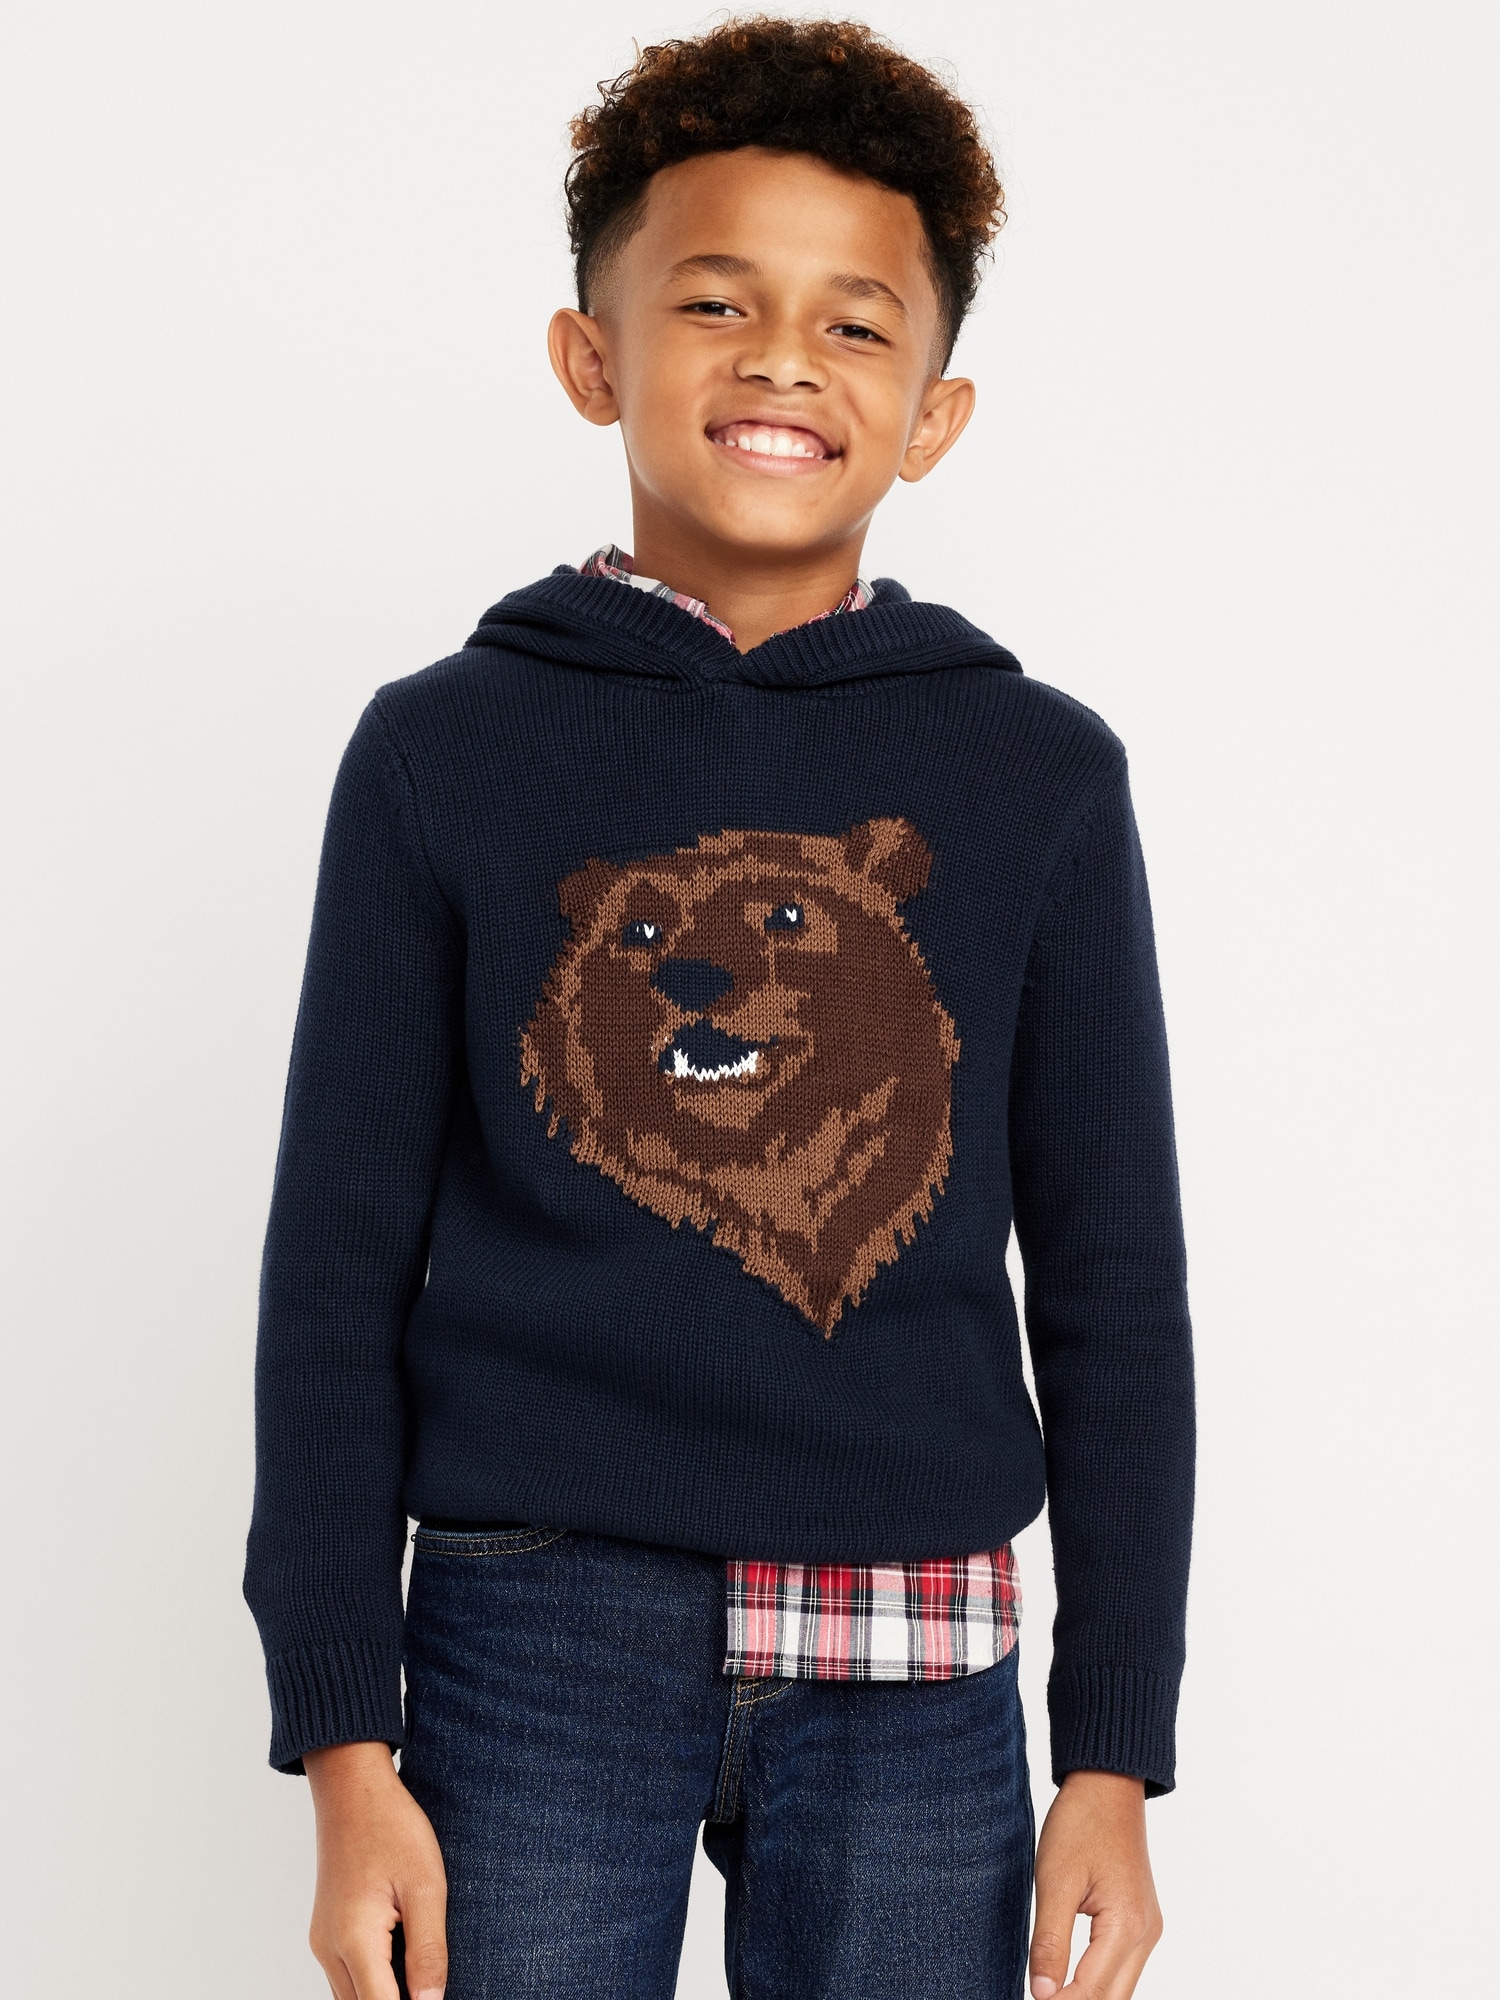 올드네이비 Printed Sweater-Knit Pullover Hoodie for Boys